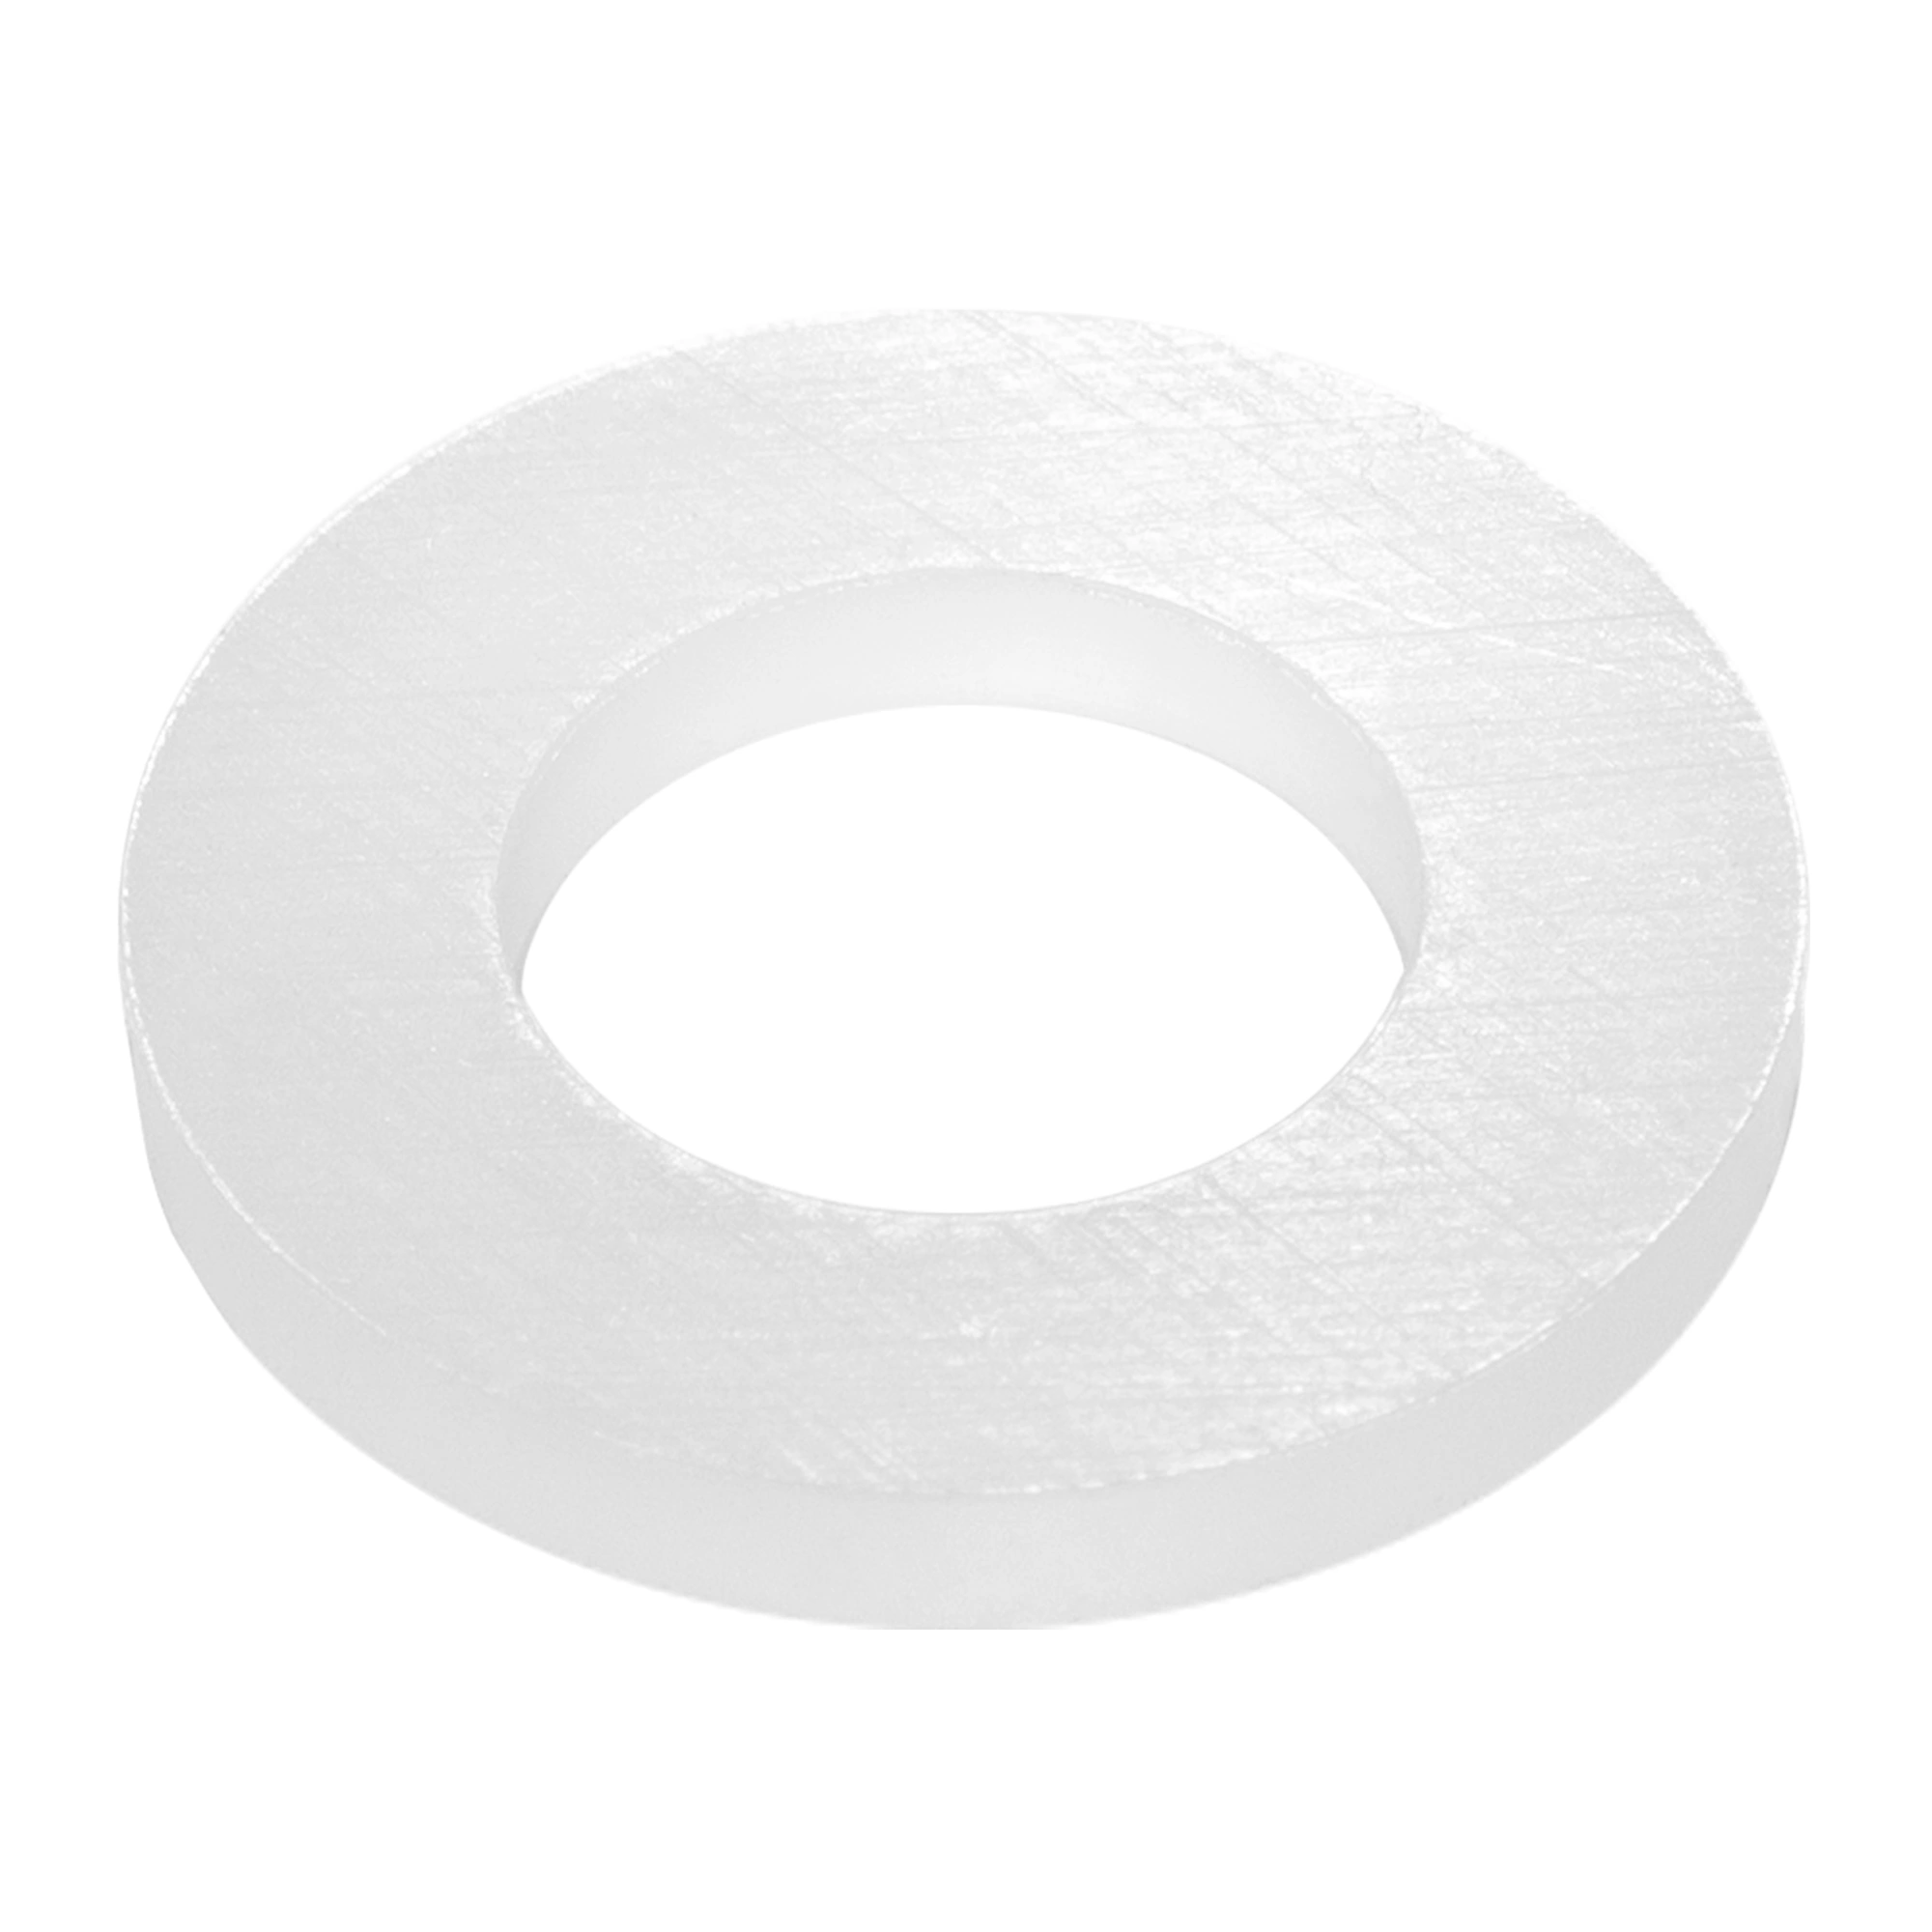 Zu sehen ist eine runde, weiße Silikondichtung für den Keramik Vorfilter der Acala Standwasserfilter in Großaufnahme vor weißem Hintergrund.